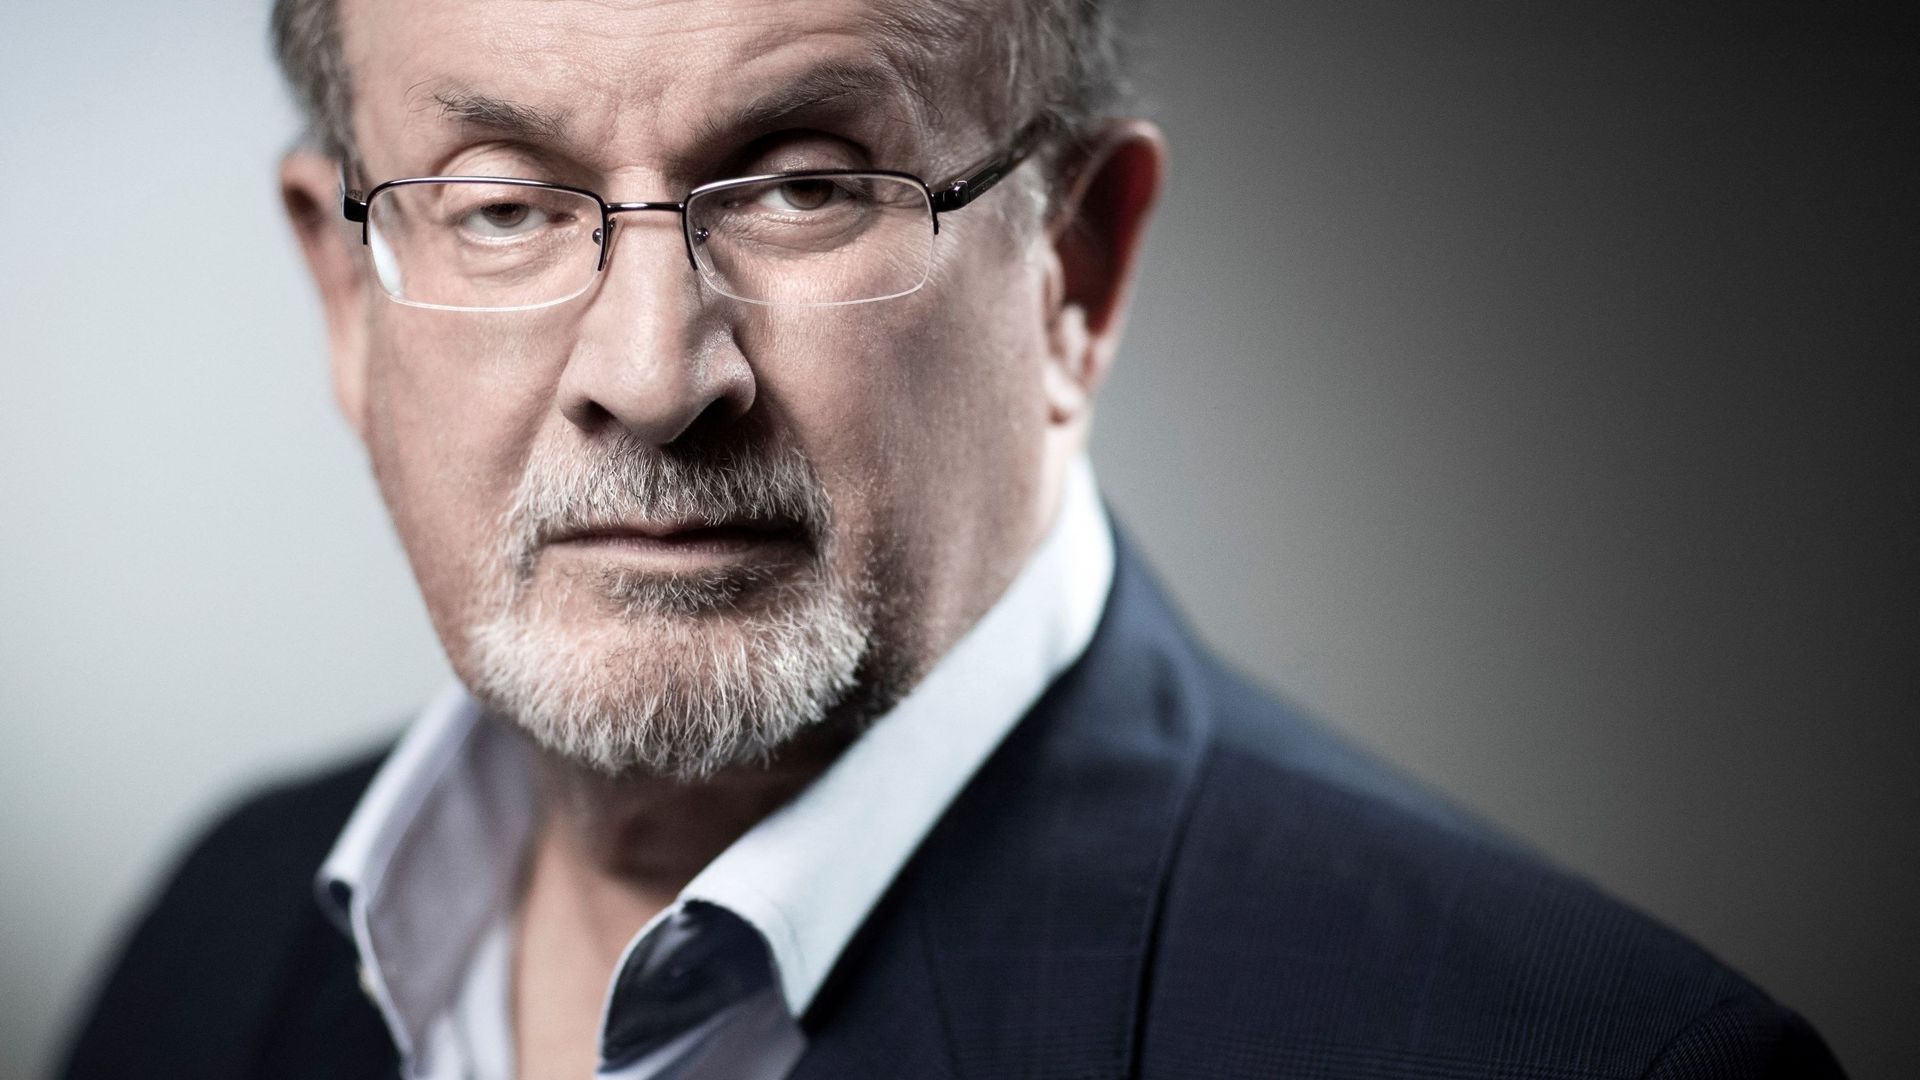 L’écrivain Salman Rushdie ("Les Versets sataniques") poignardé sur scène aux Etats-Unis